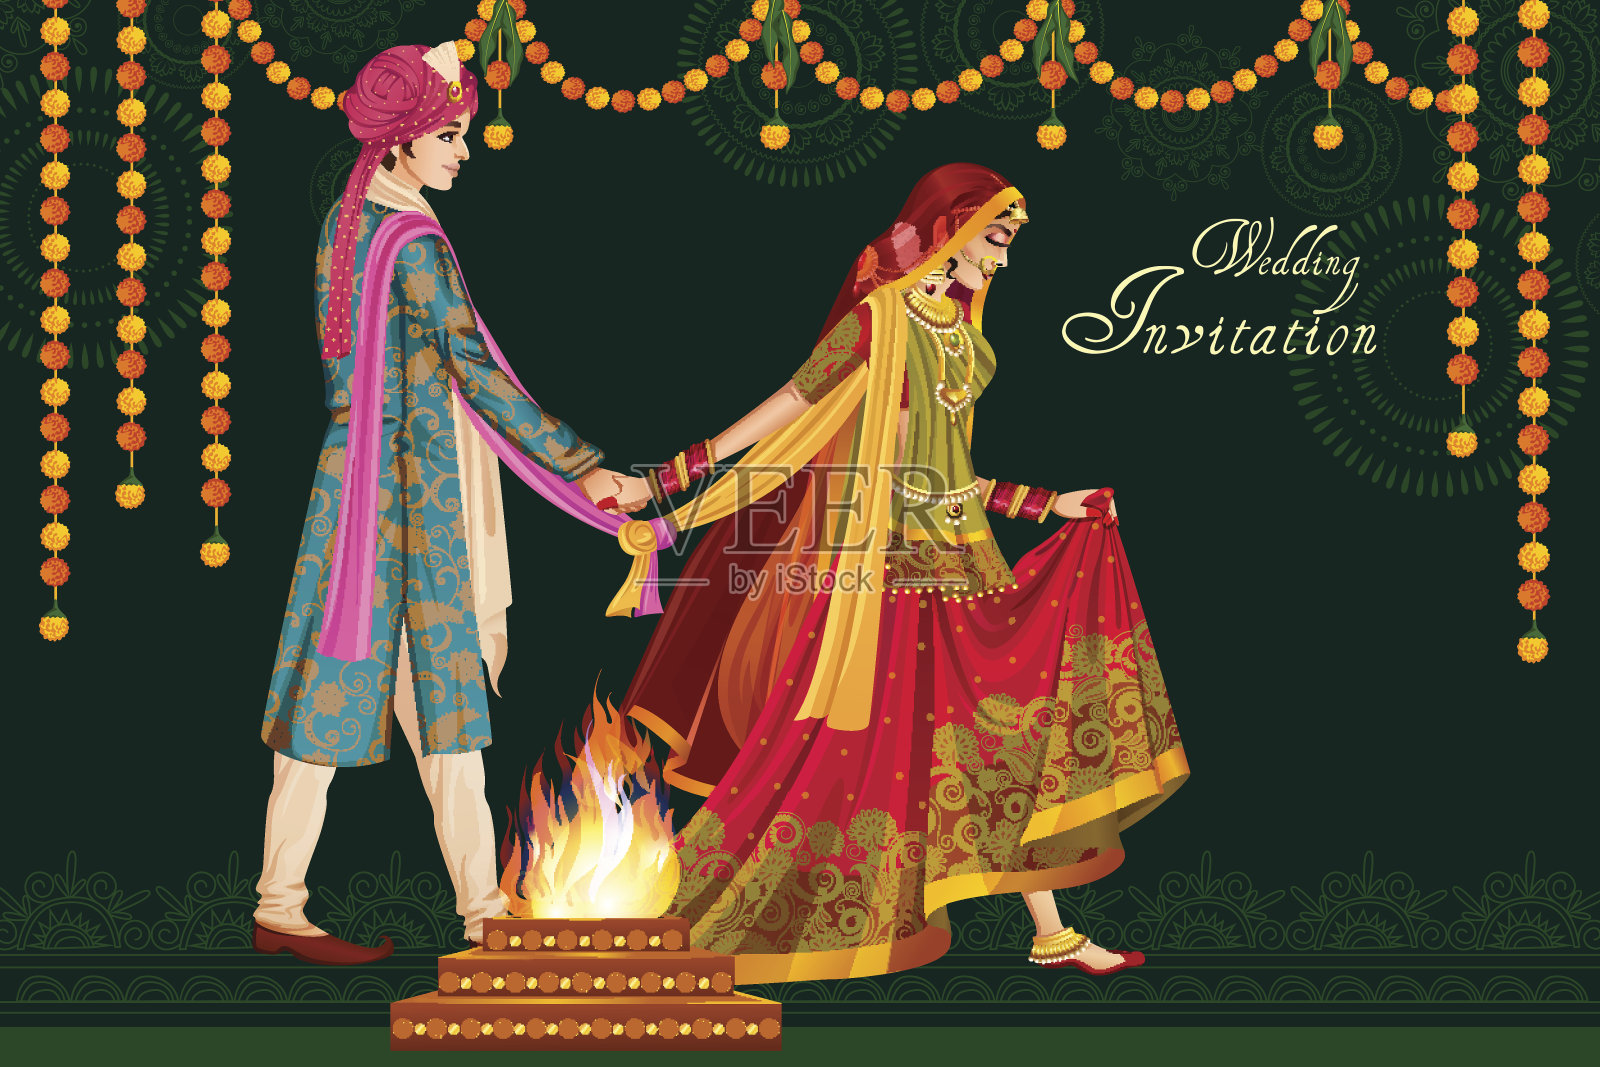 印度夫妇在婚礼上的Satphera仪式的印度设计模板素材